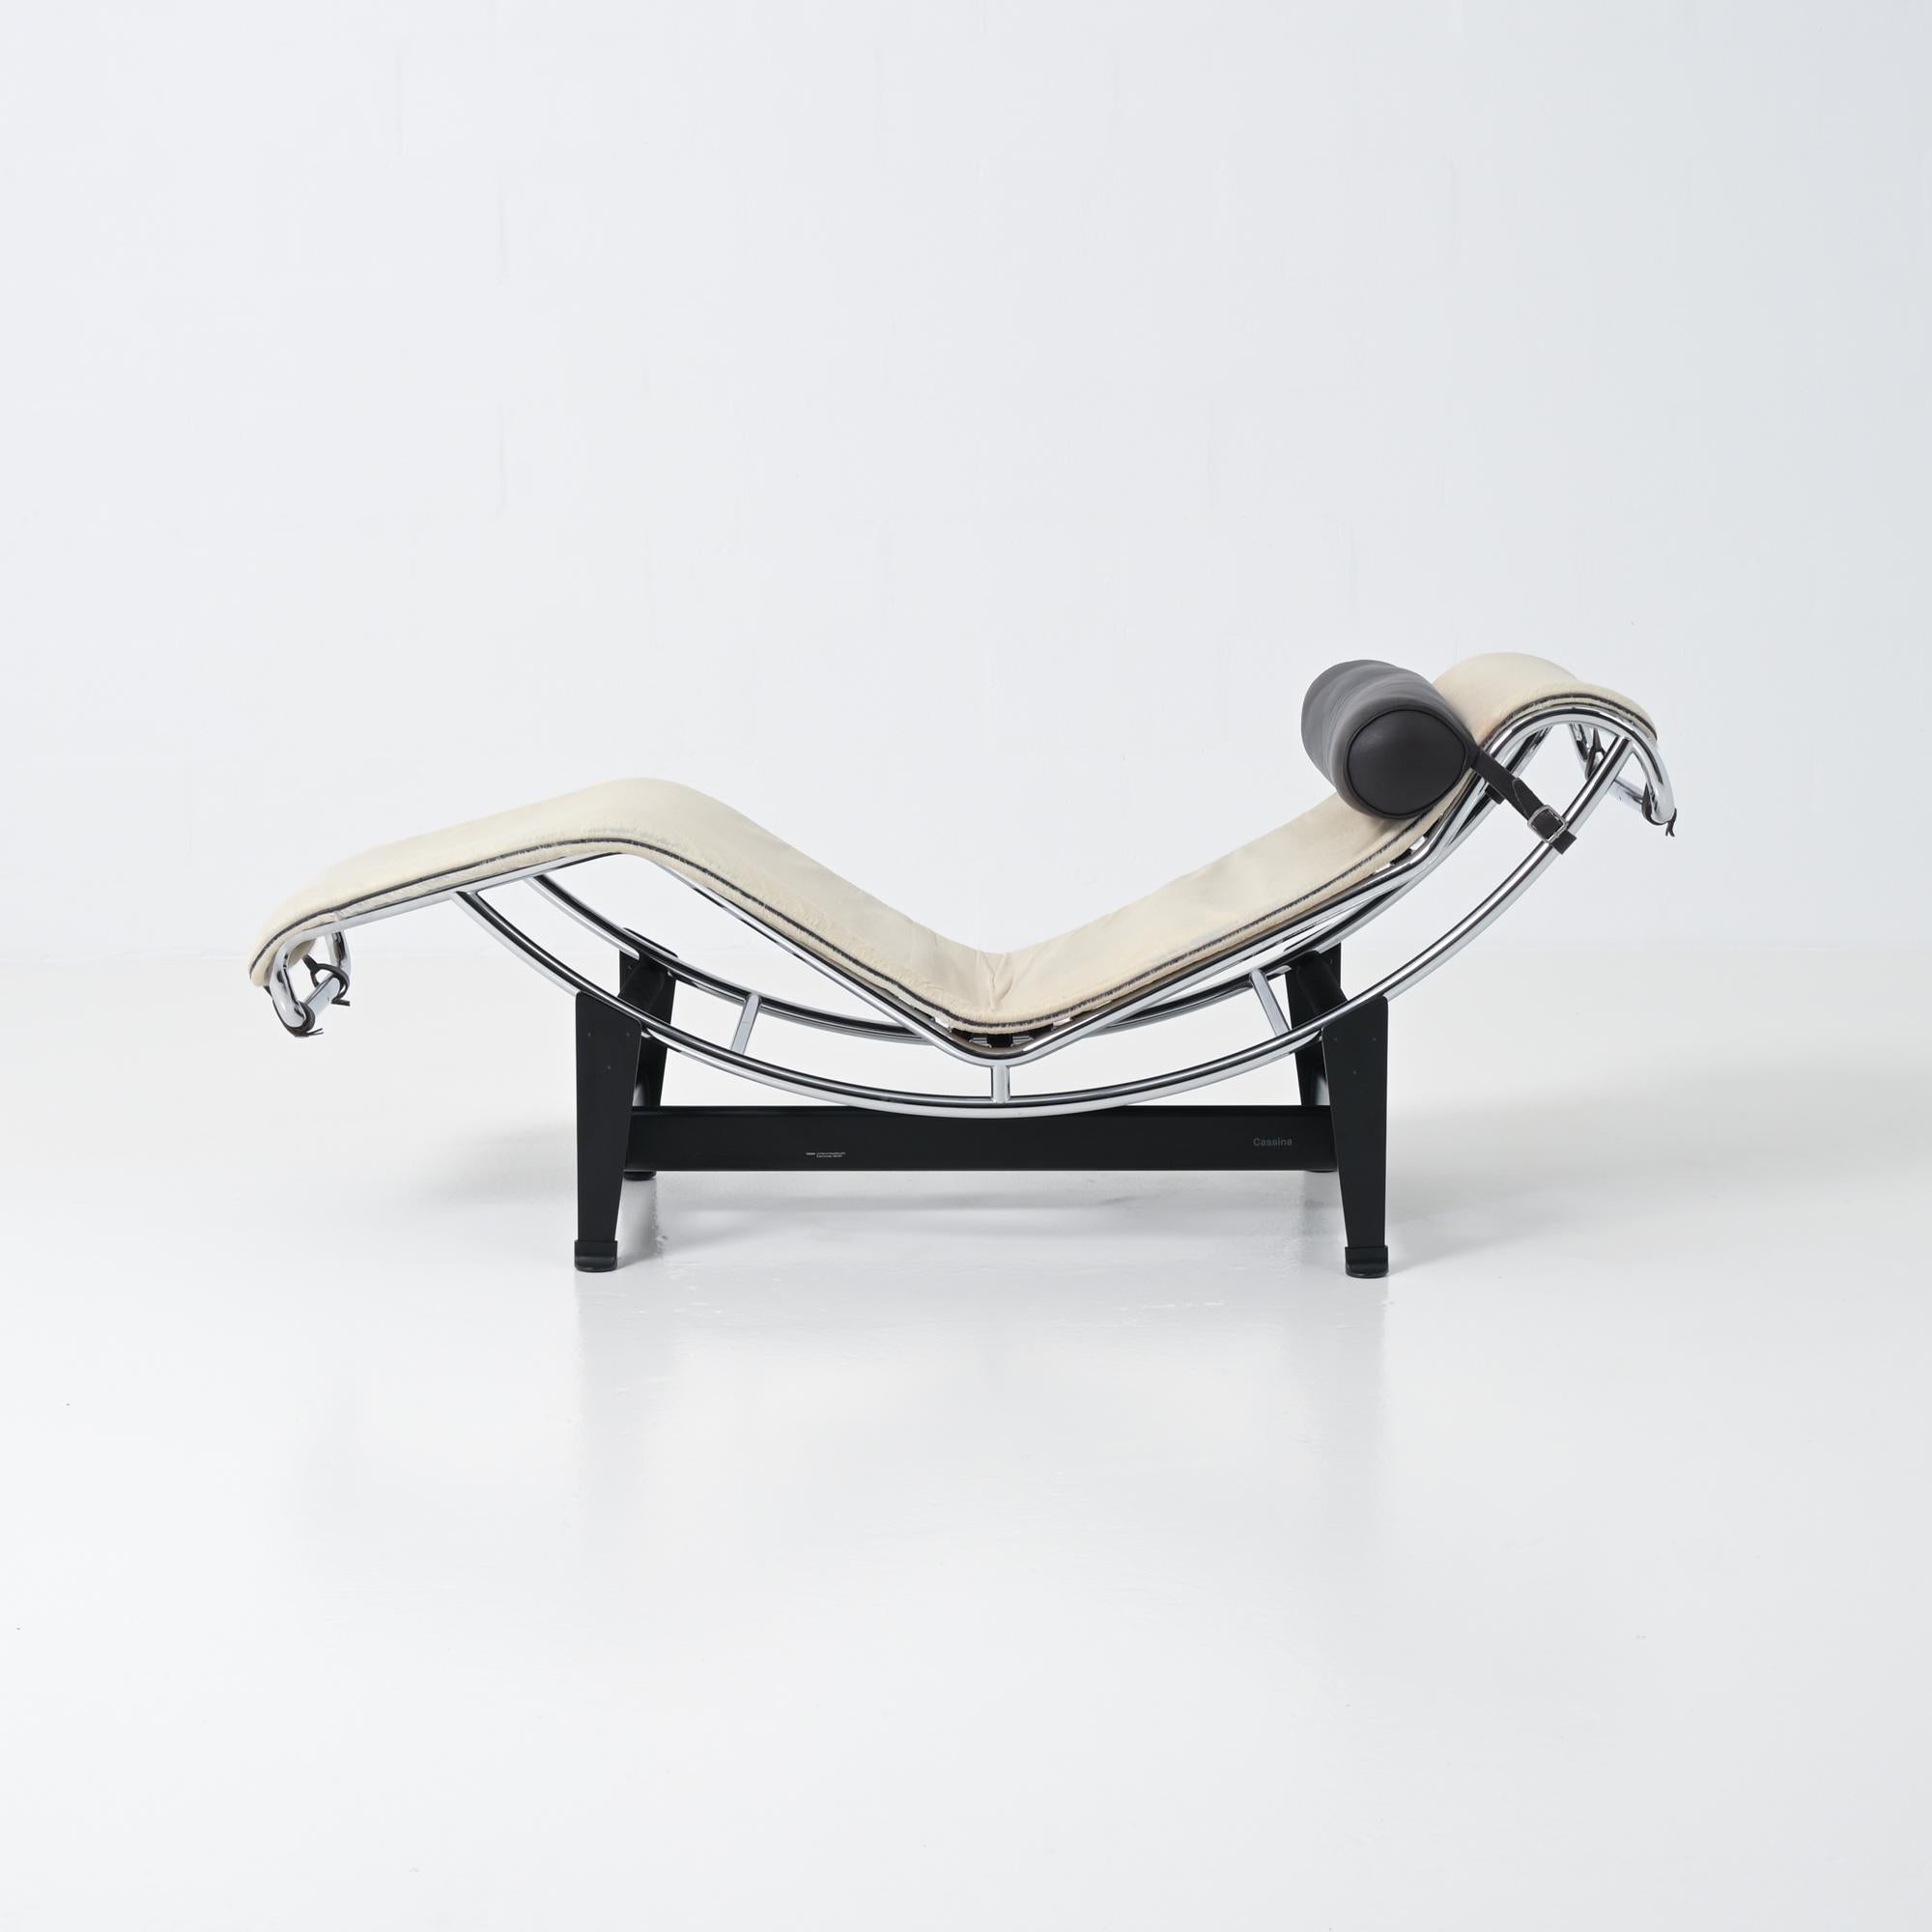 Der Loungesessel LC4 wurde von Le Corbusier, Pierre Jeanneret und Charlotte für den Salon d'Automne in Paris entworfen.
Dieser Loungesessel mit schwarzem Stahlfuß, verstellbarem verchromtem Metallrohrgestell und einer Kopfstütze aus schwarzem Leder